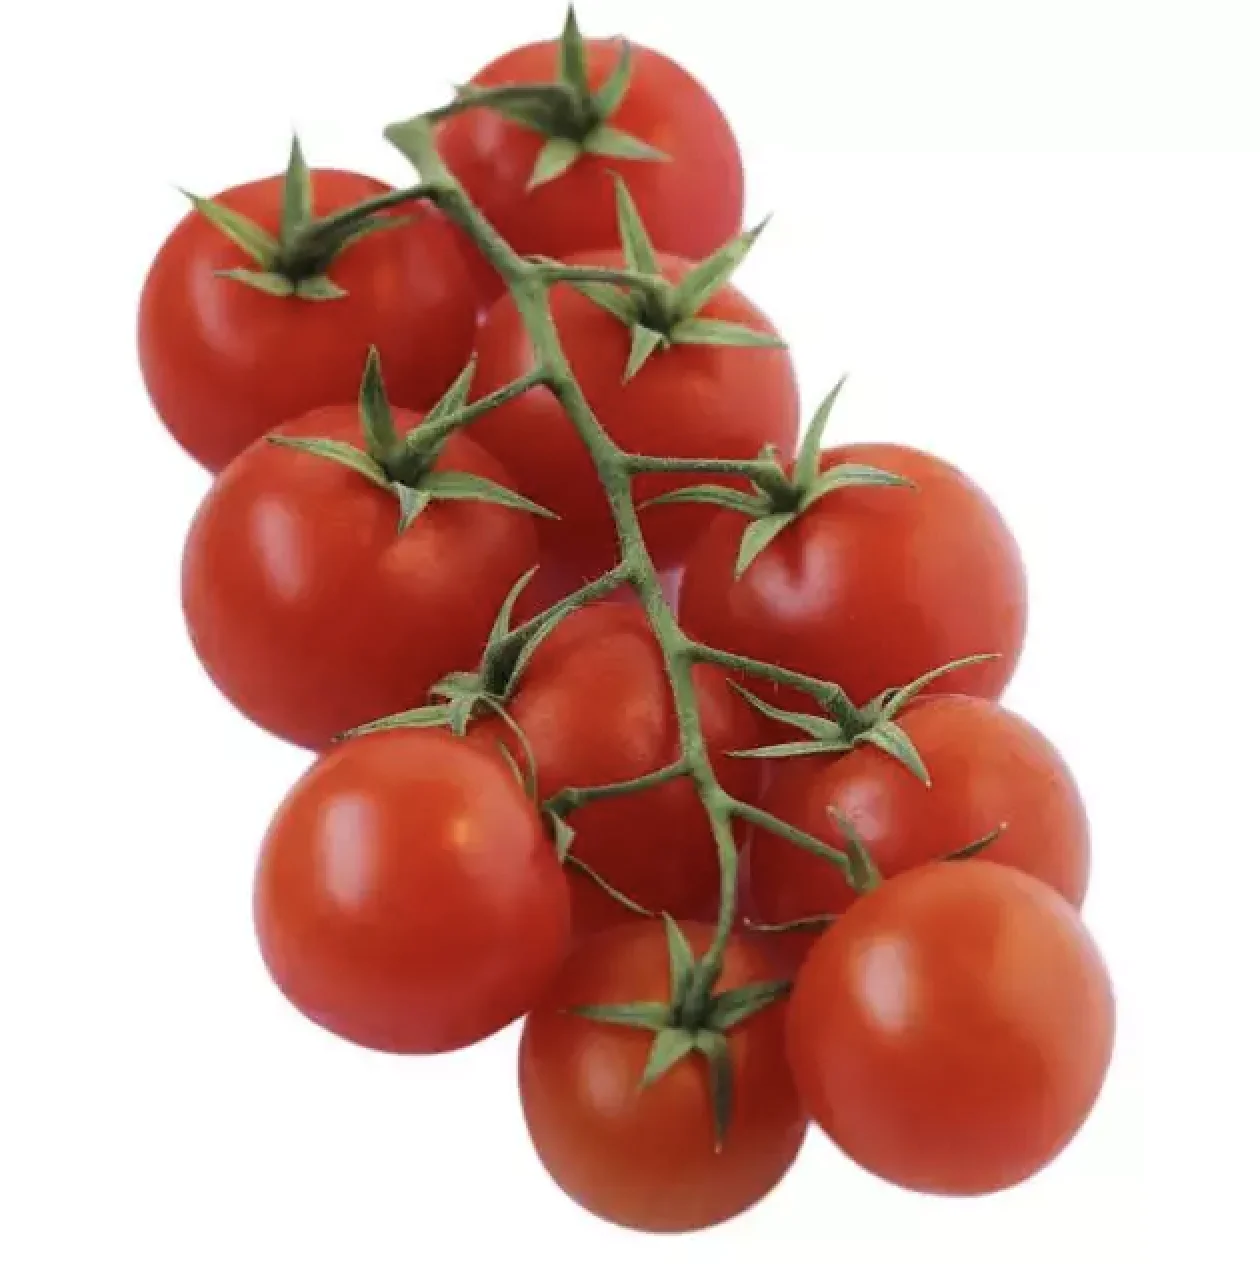 Купить томаты от производителя. Томаты черри красные. Томаты черри турецкие. Vita Fresh томаты черри красные.